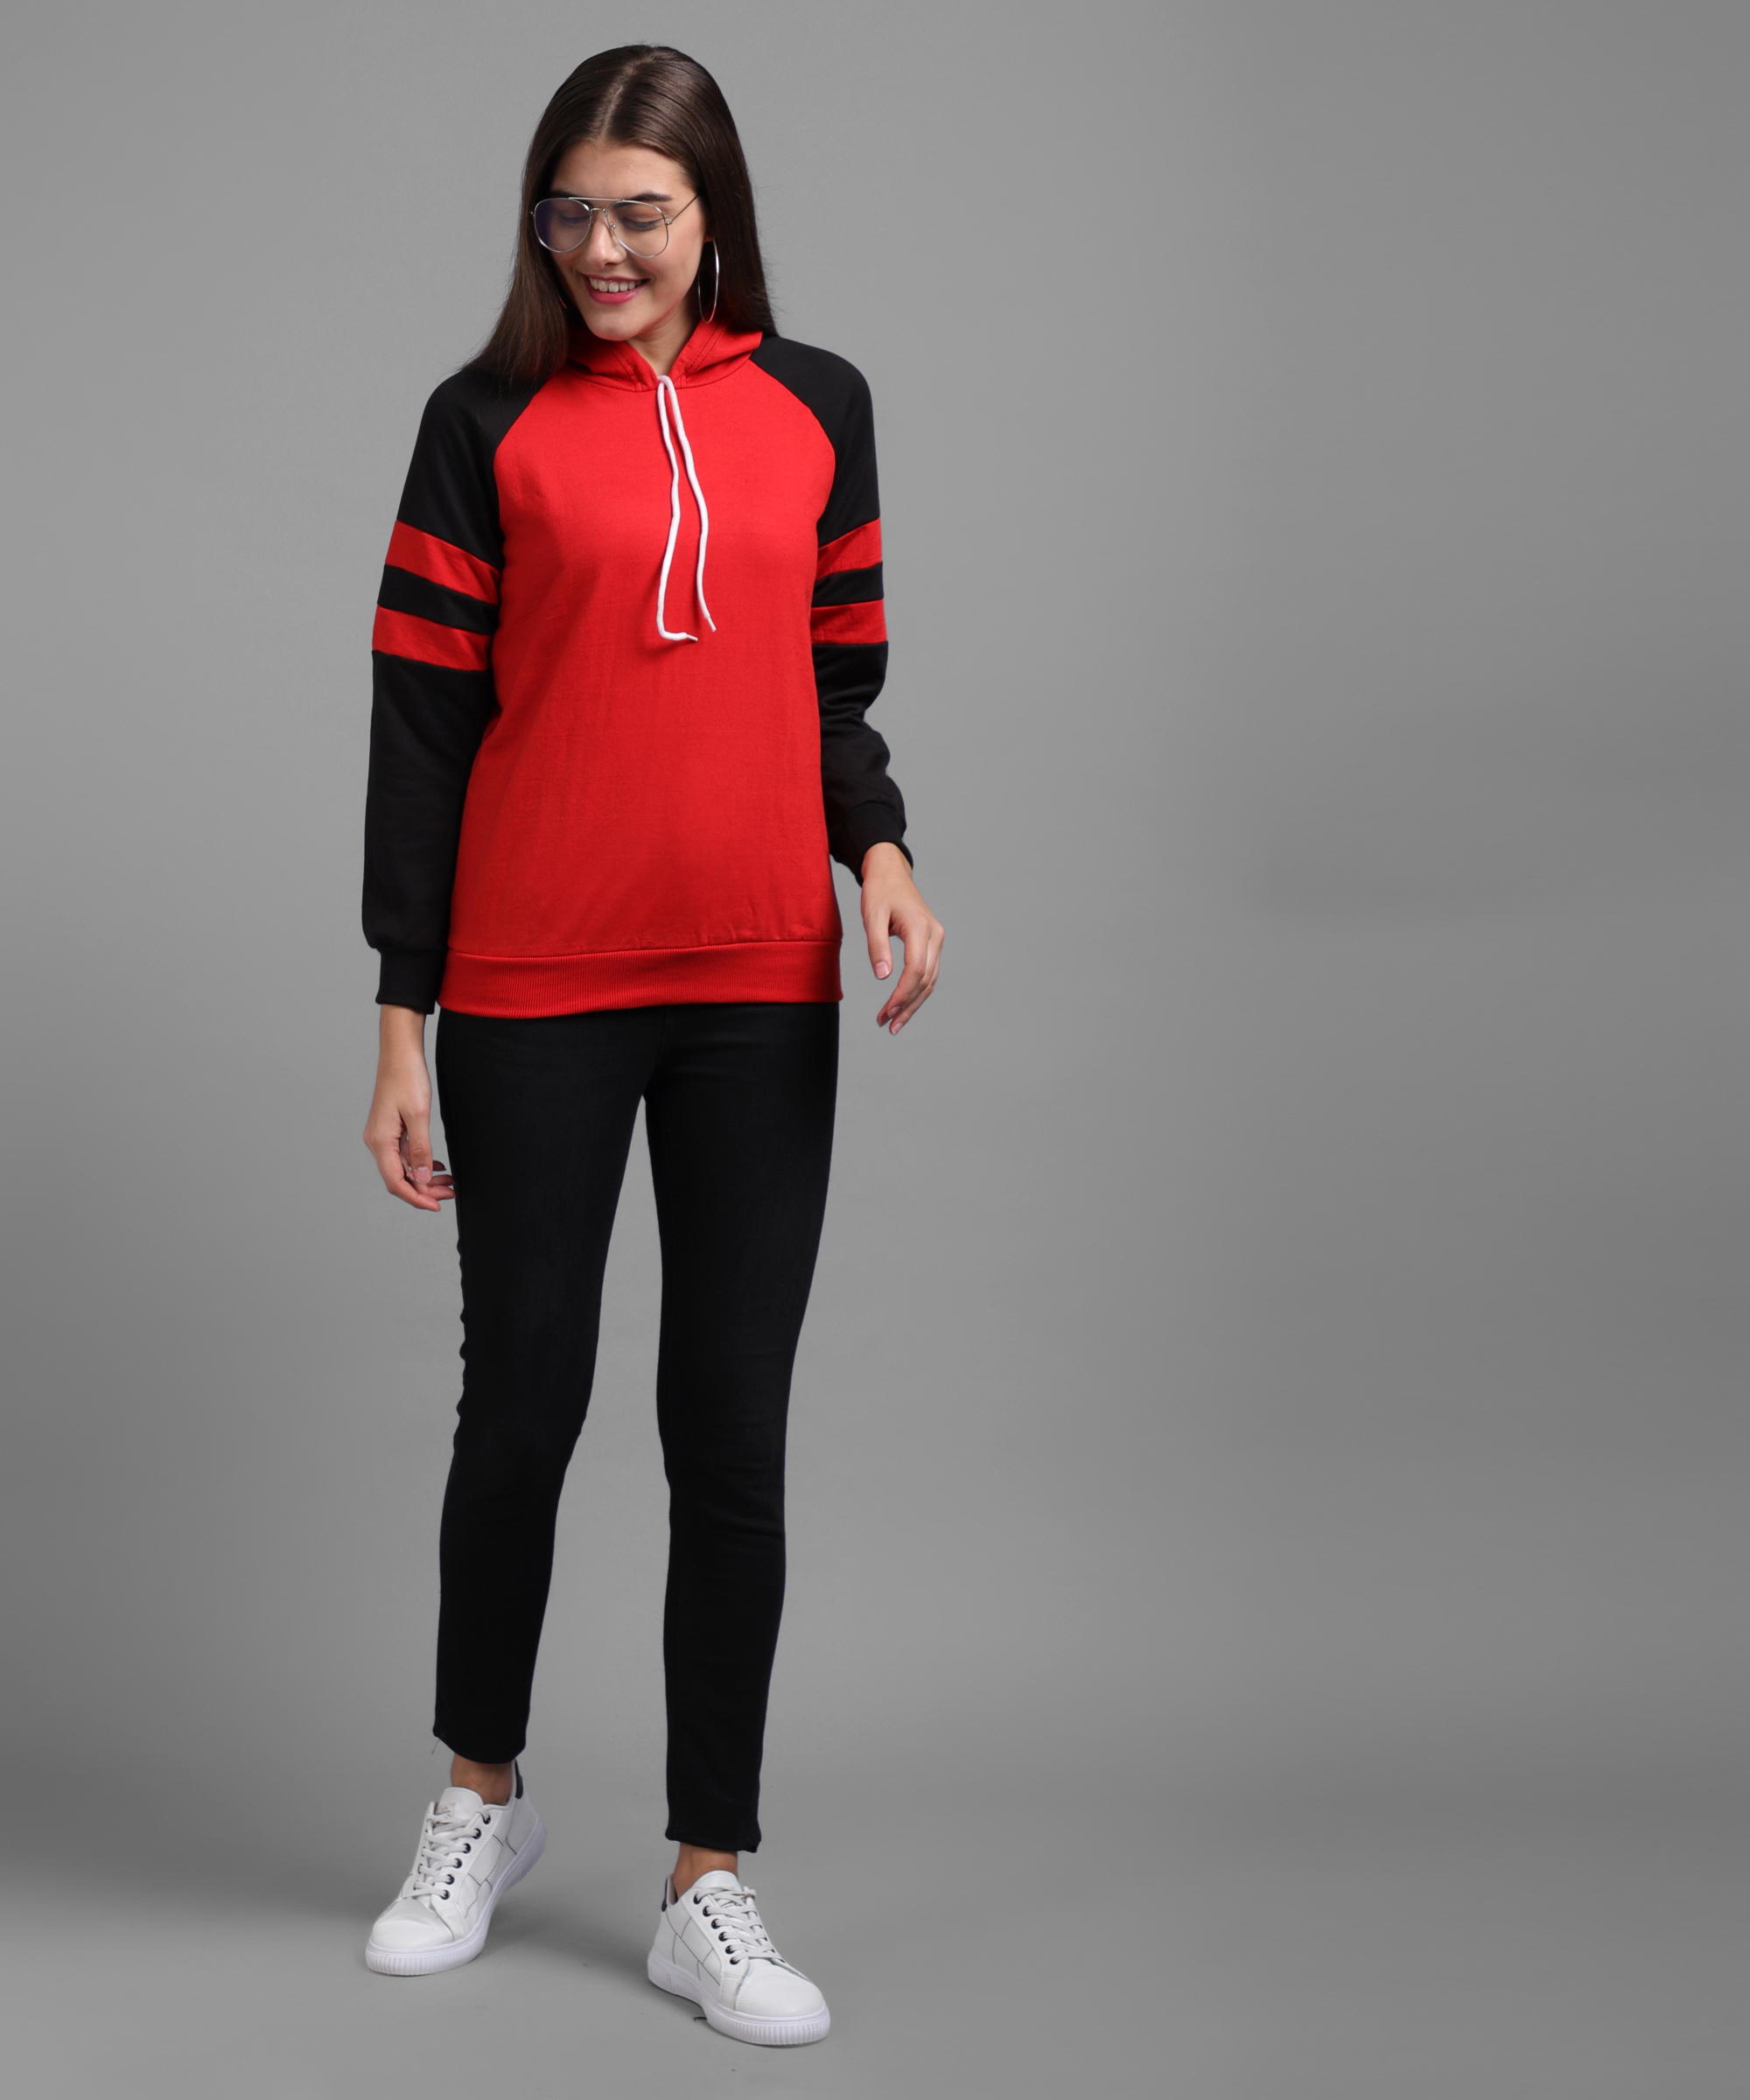 Buy Vivient Women Color Block (Red & Black) Sweatshirt Online - Get 74% Off